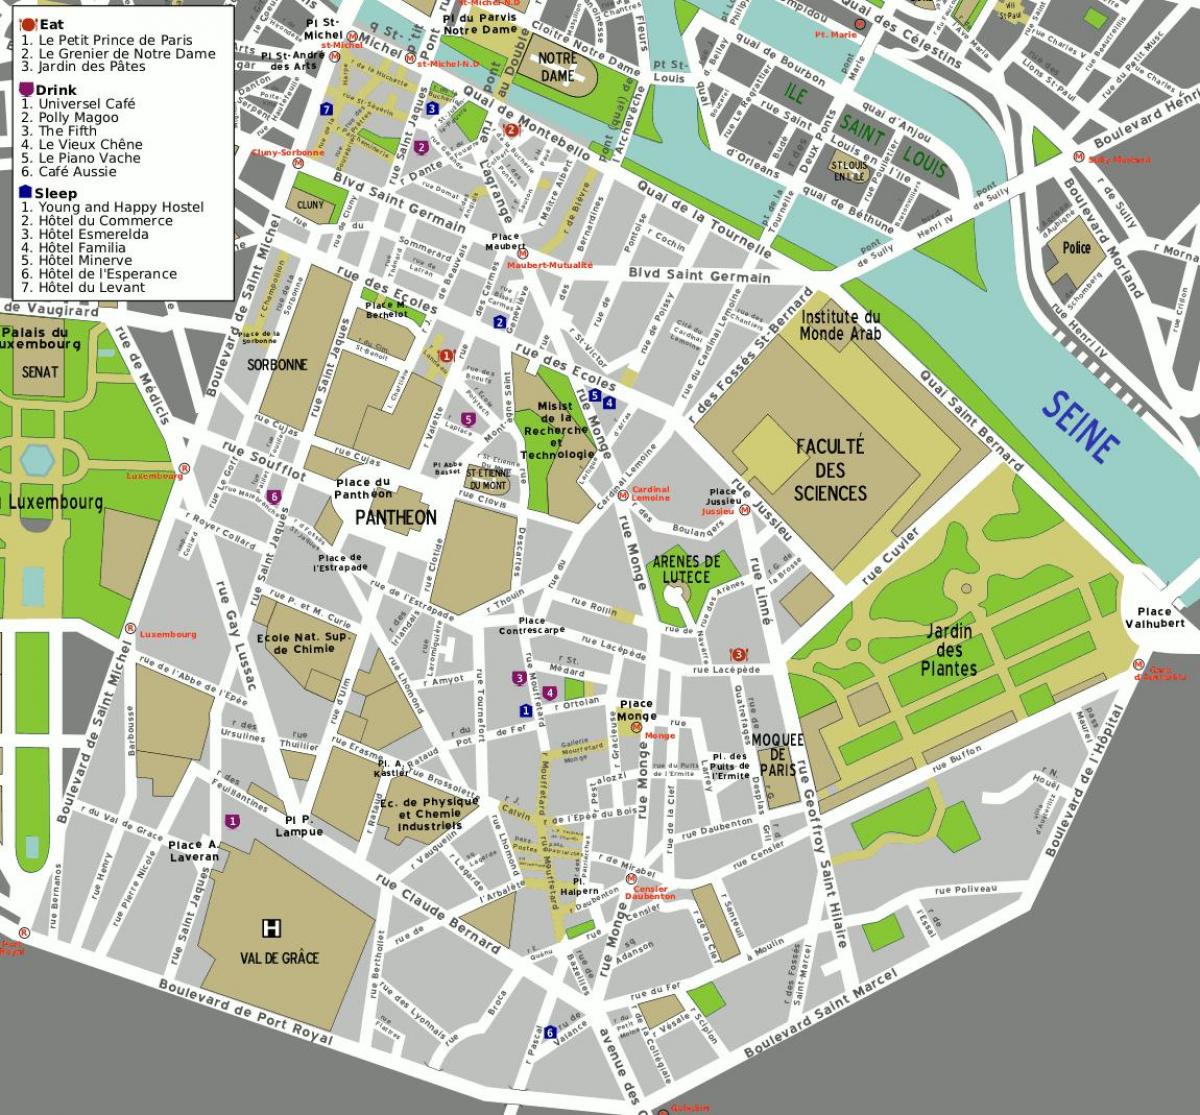 המפה של ה-5 של פריז